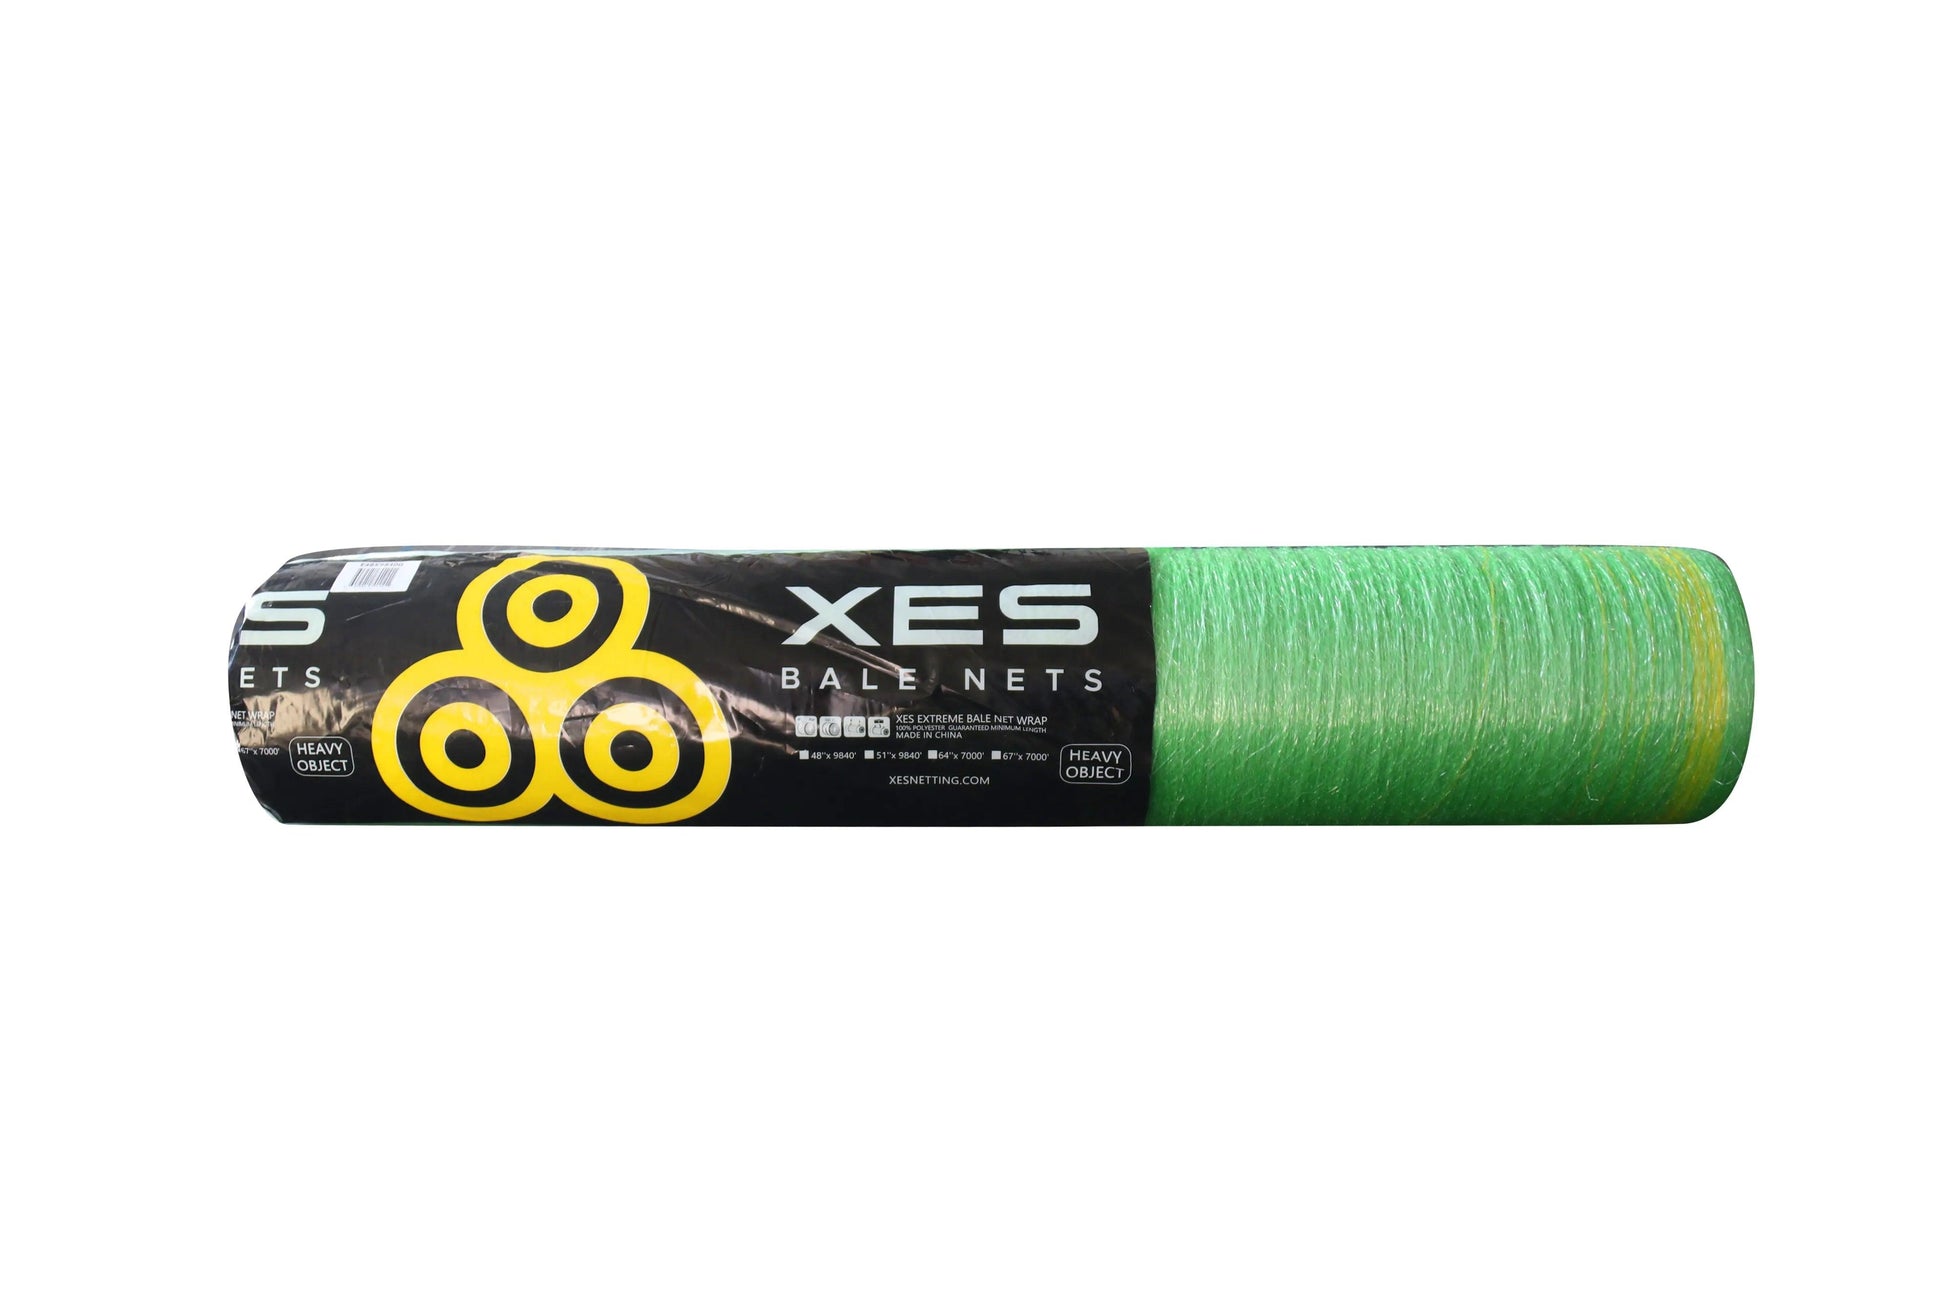 XES® Extreme Bale Net Wrap - XES Bale Nets